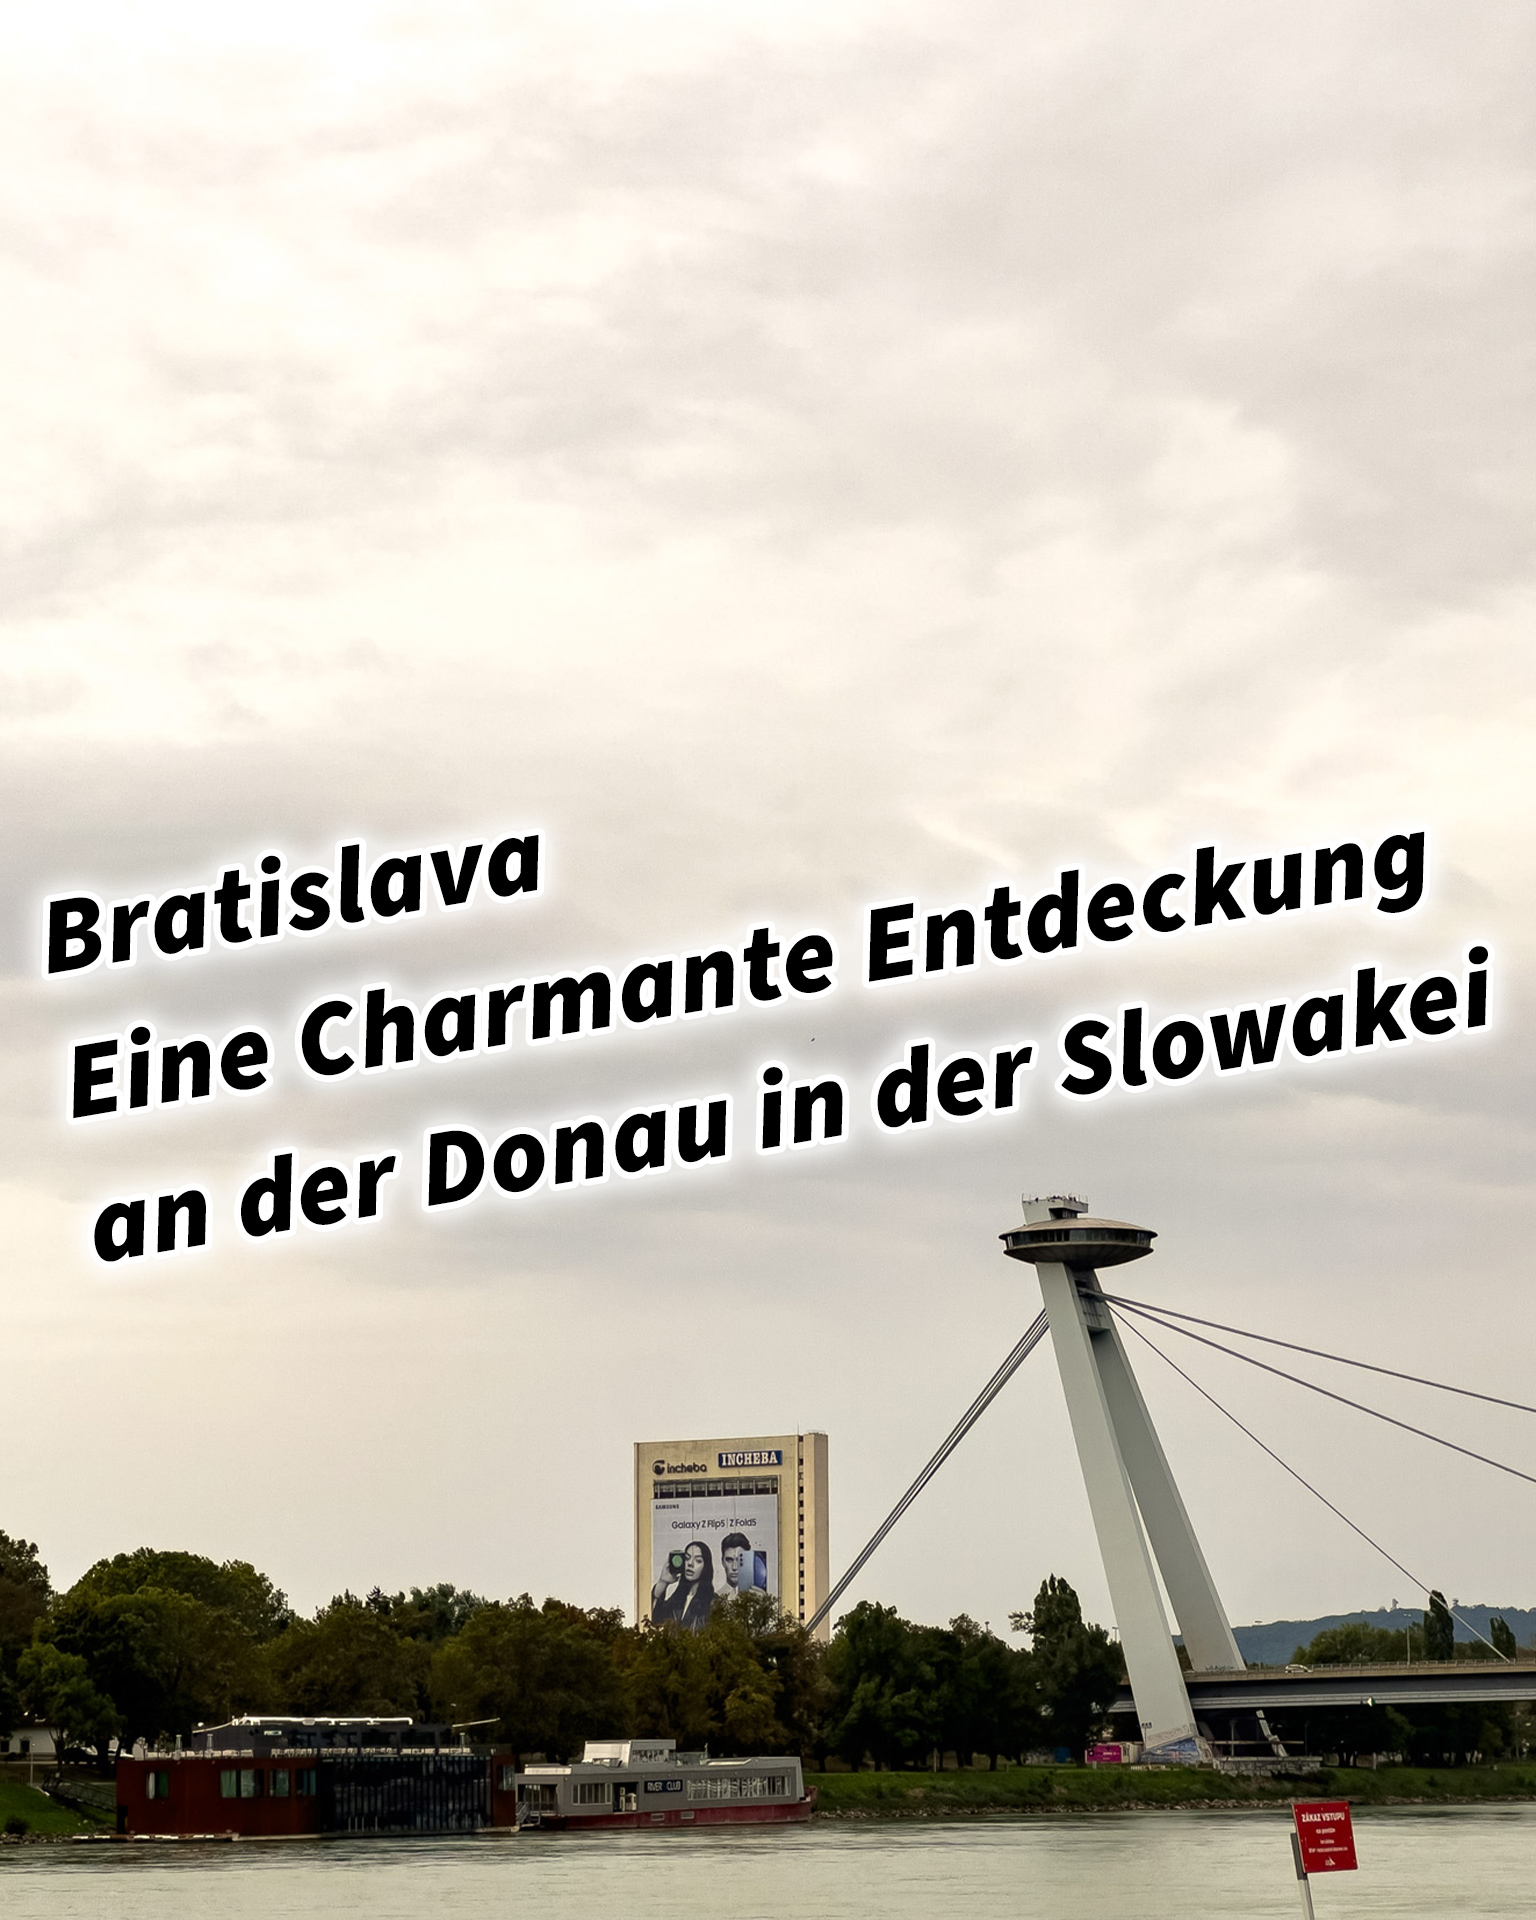 Bratislava – Eine Charmante Entdeckung an der Donau in der Slowakei